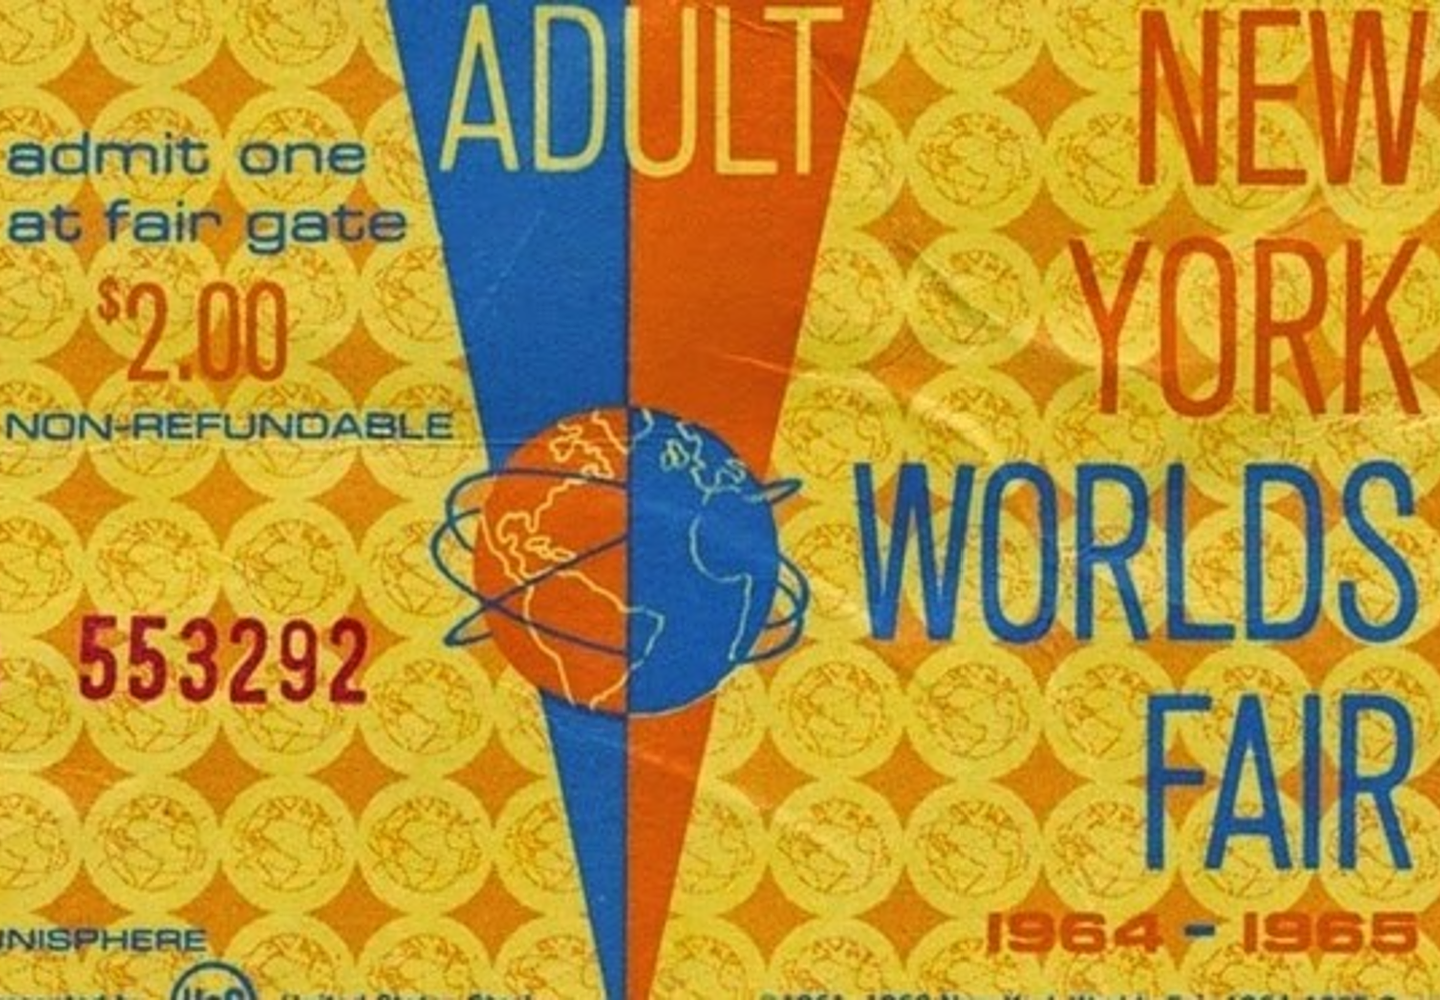 The 1964 World’s Fair: Peace Through Understanding